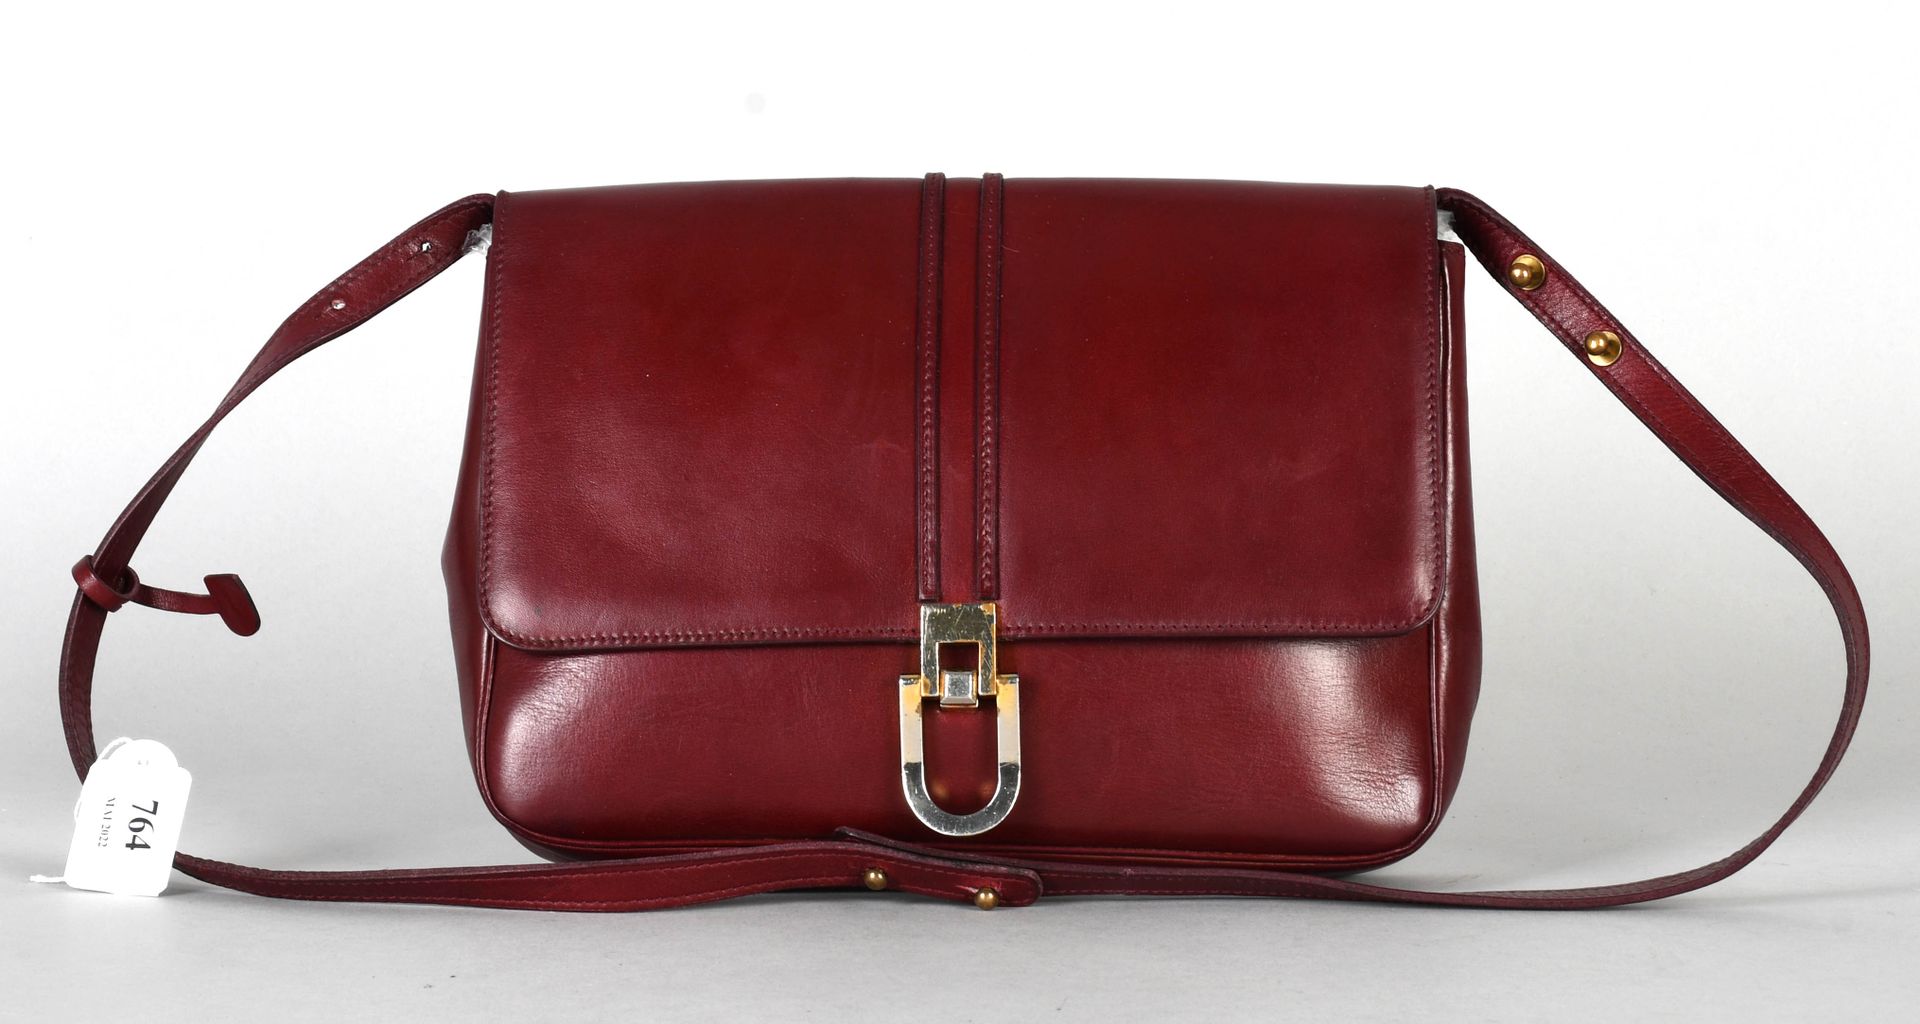 Delvaux Vintage shoulder bag in burgundy leather.